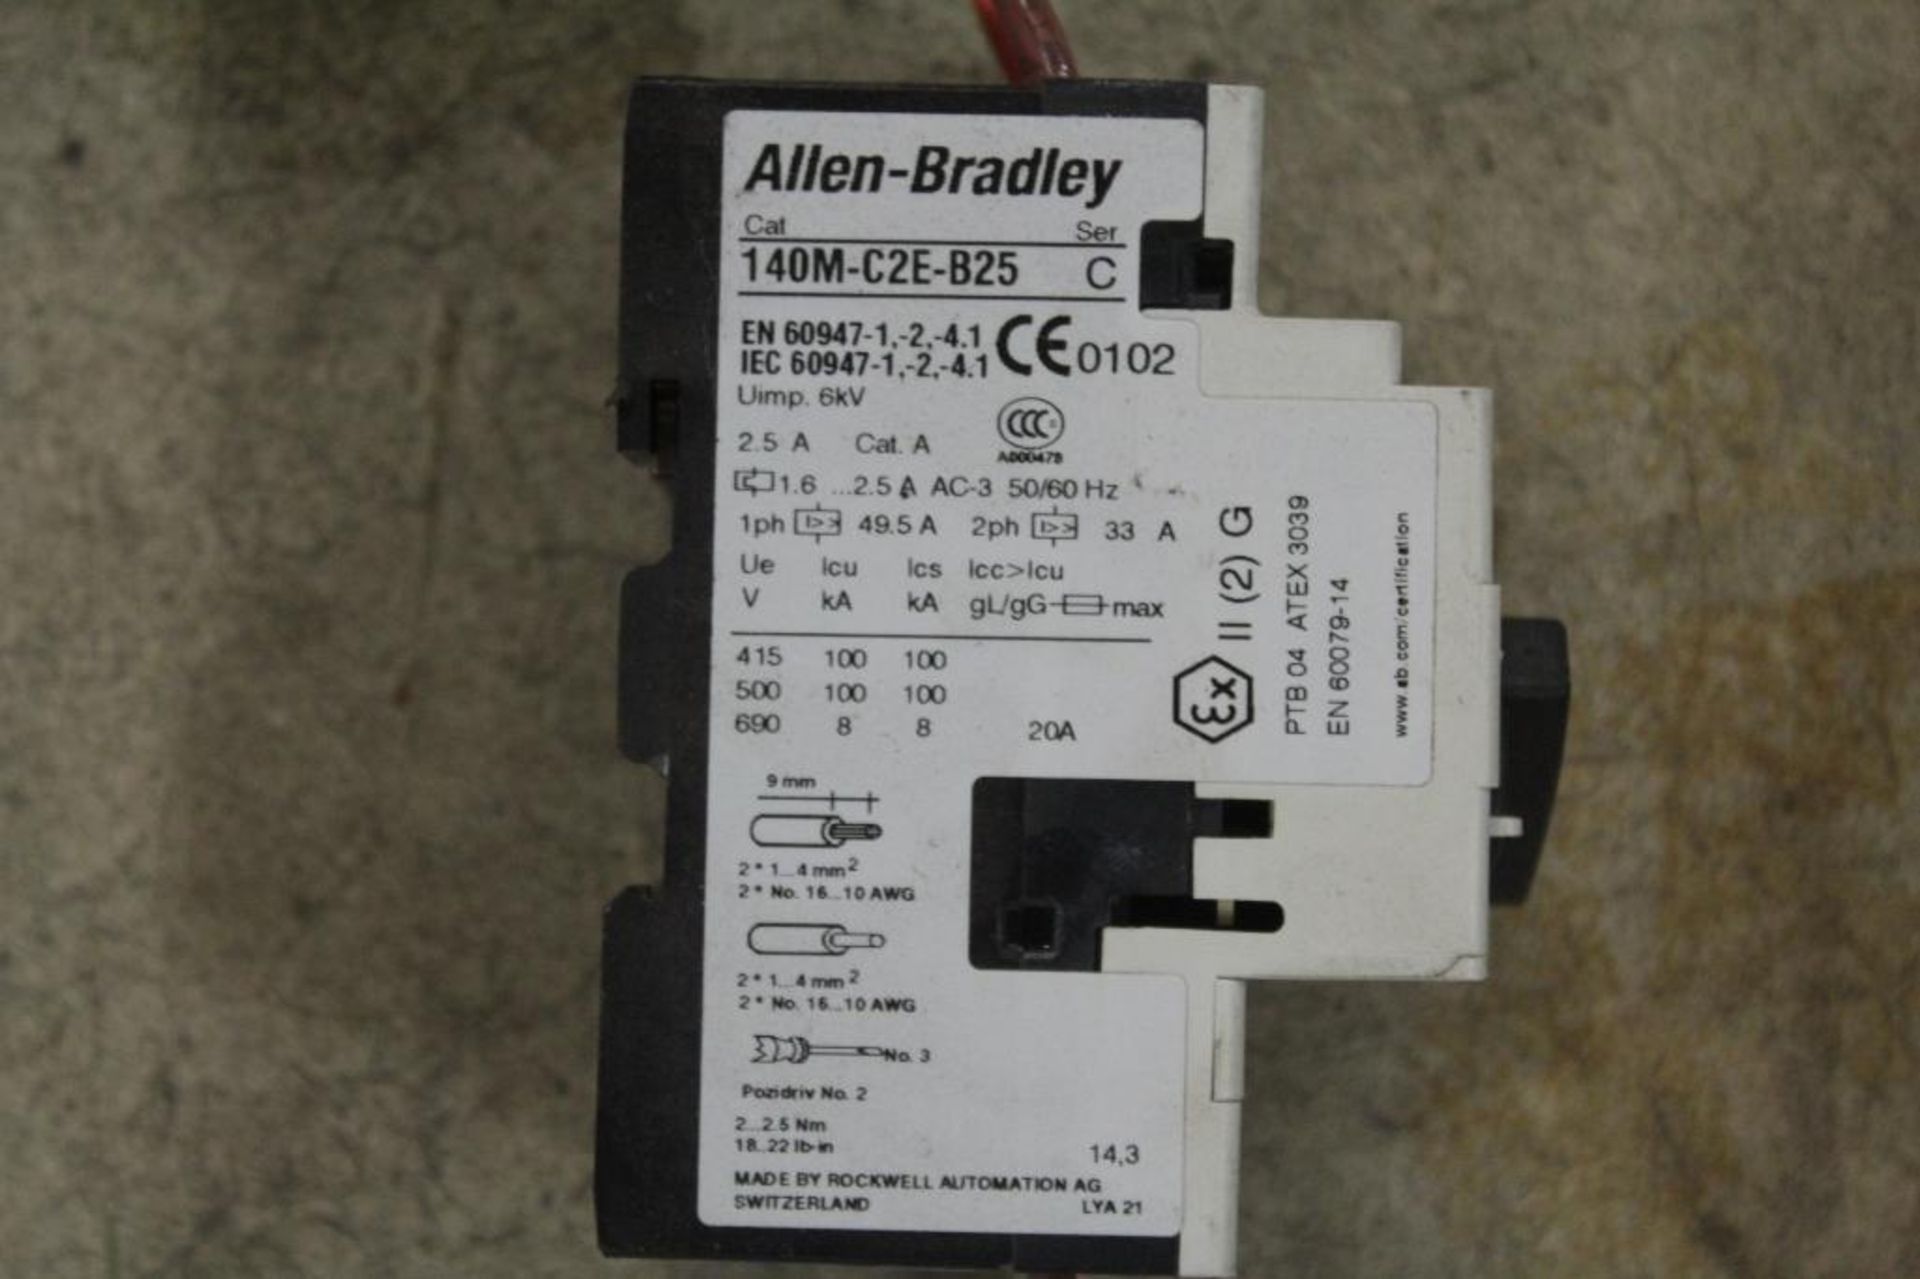 Lot of Allen-Bradley Contactors - Image 2 of 2